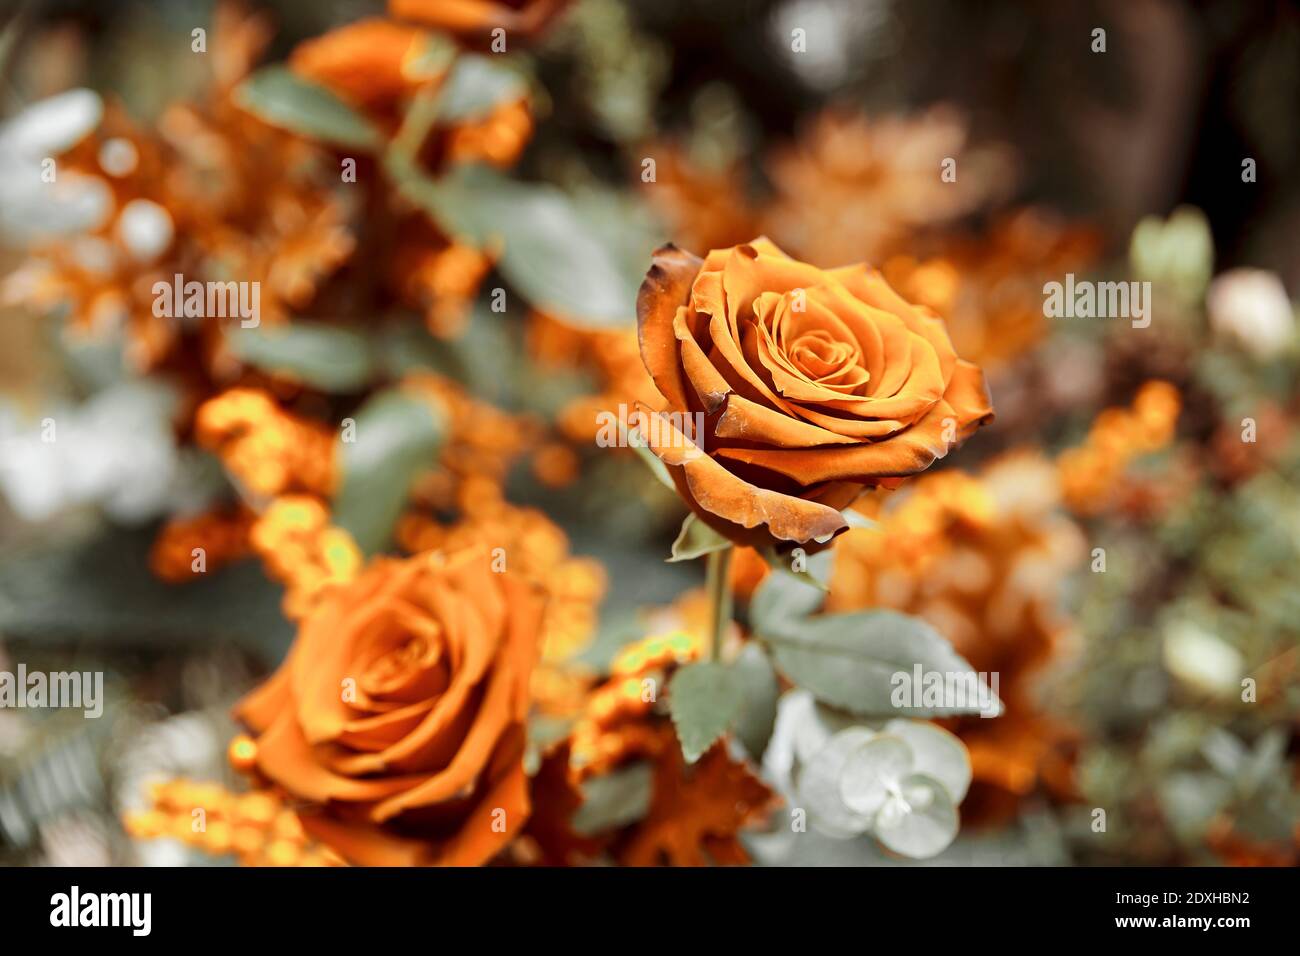 vue de dessus du bouquet de roses dorées sur les feuilles vertes Banque D'Images